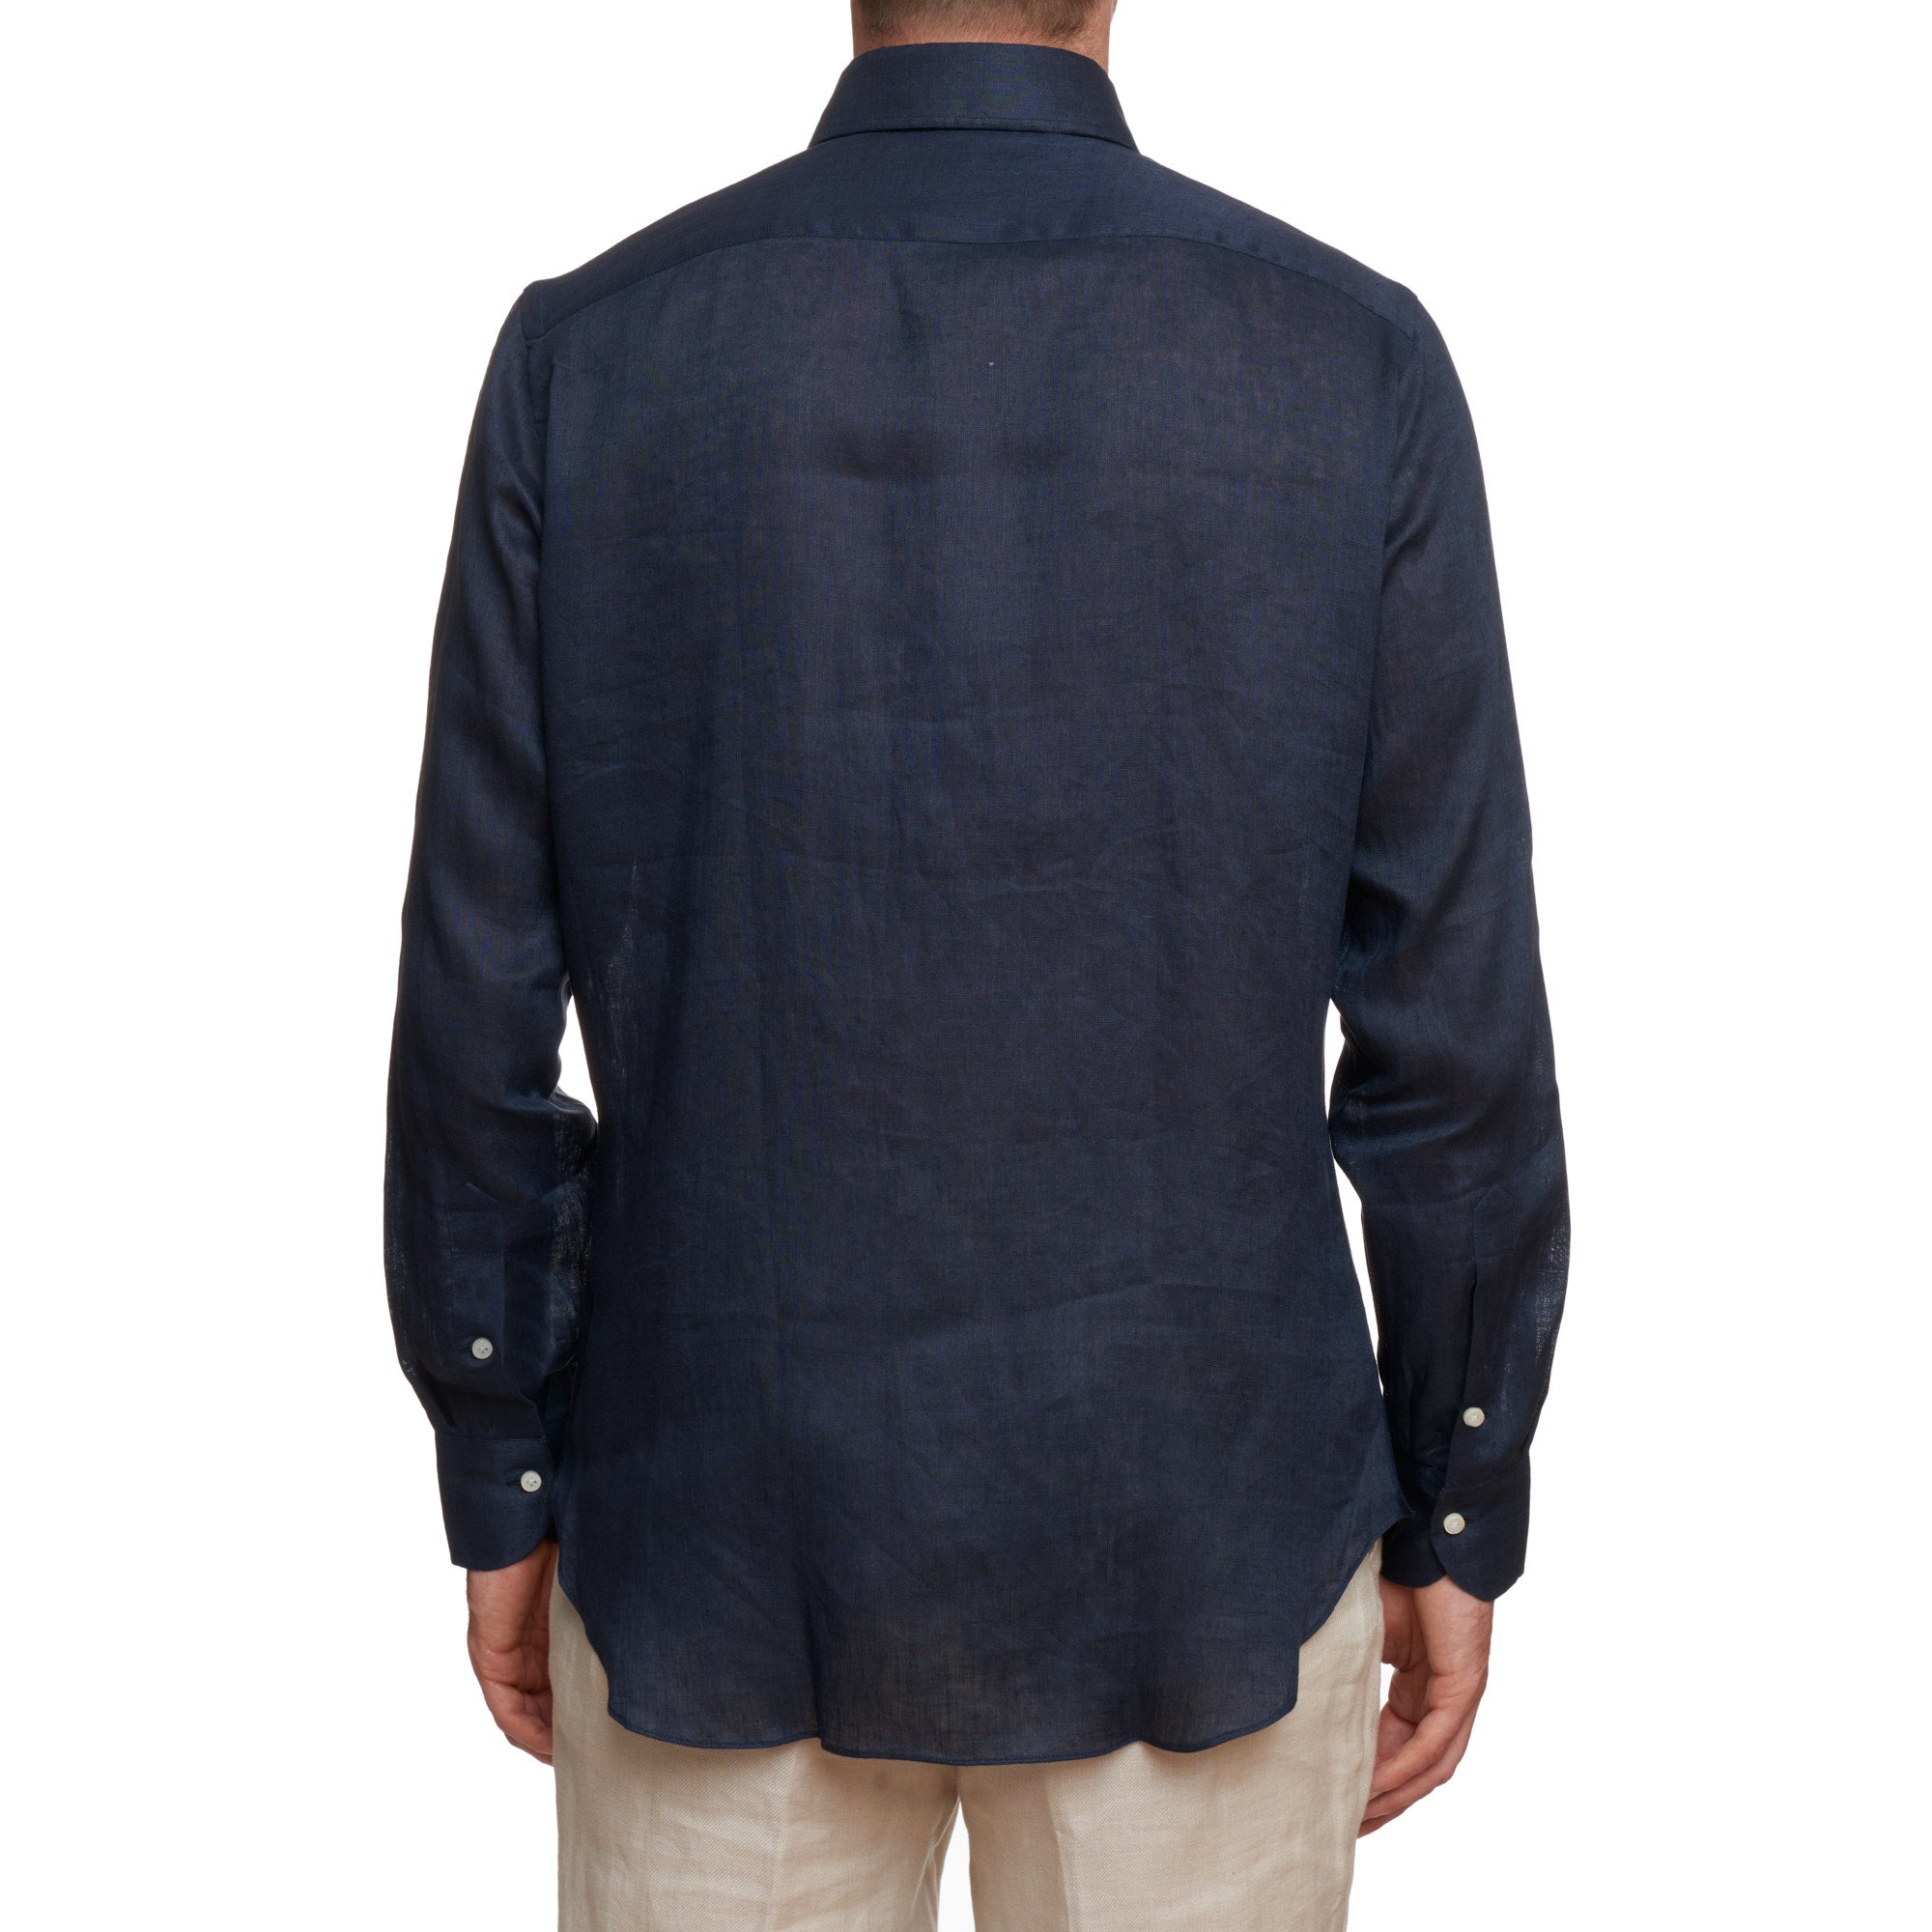 SARTORIO Napoli by KITON Indigo Blue Linen Button-Down Casual Shirt EU 40 NEW US 15.75 SARTORIO